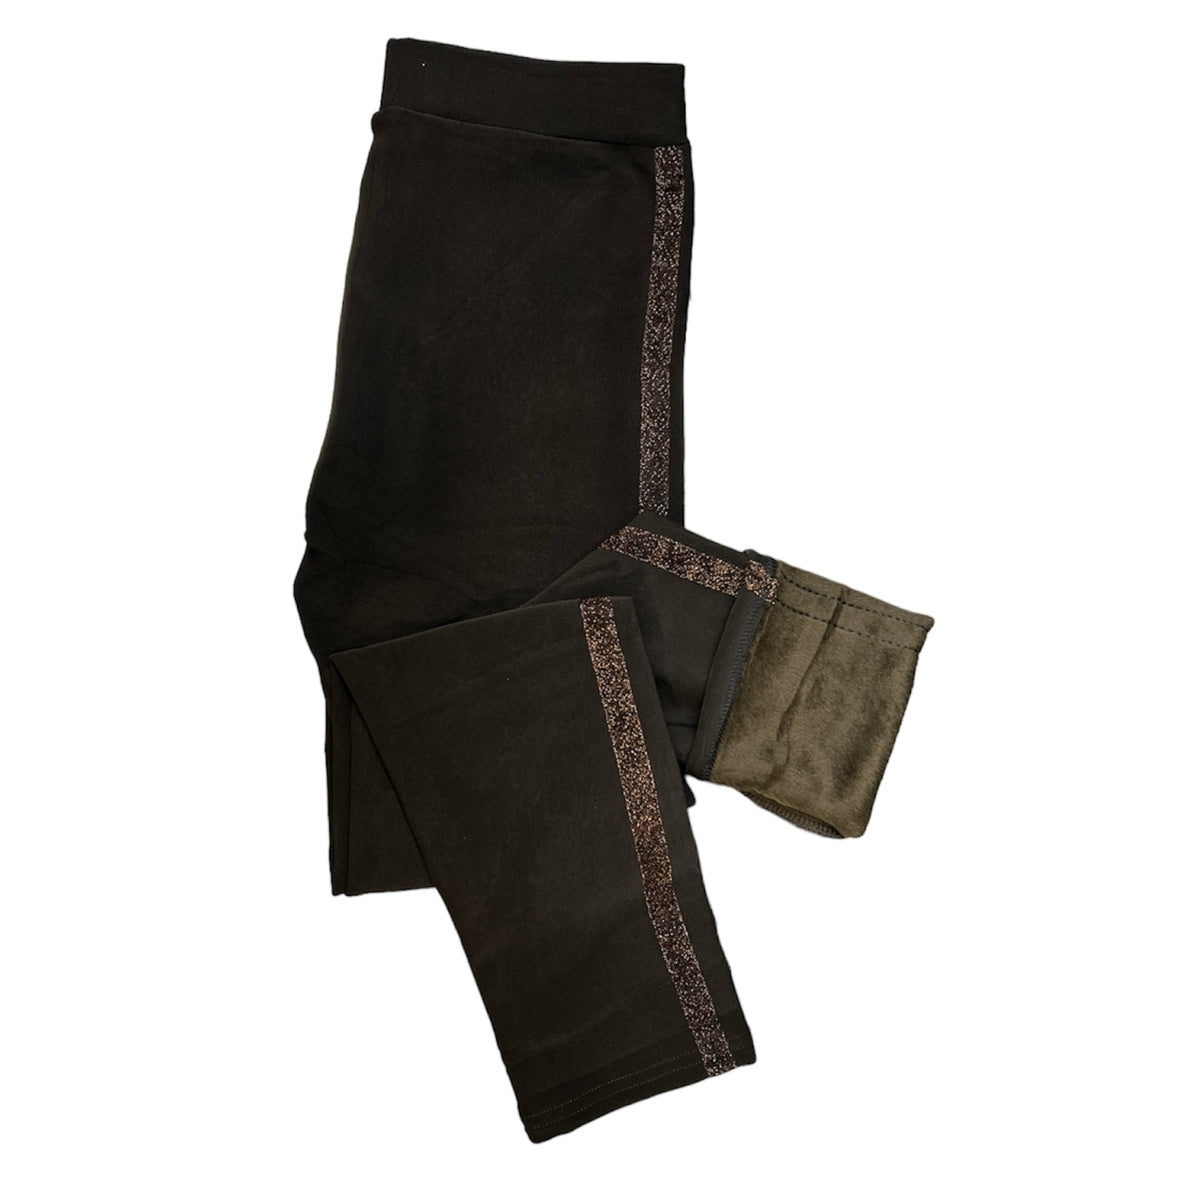 Ces leggings en tissu chaud et soyeux apportent une touche de sophistication et d'élégance. Le beau détail côté brun donne aux leggings une touche luxueuse, parfaite pour vous sentir à votre meilleur.